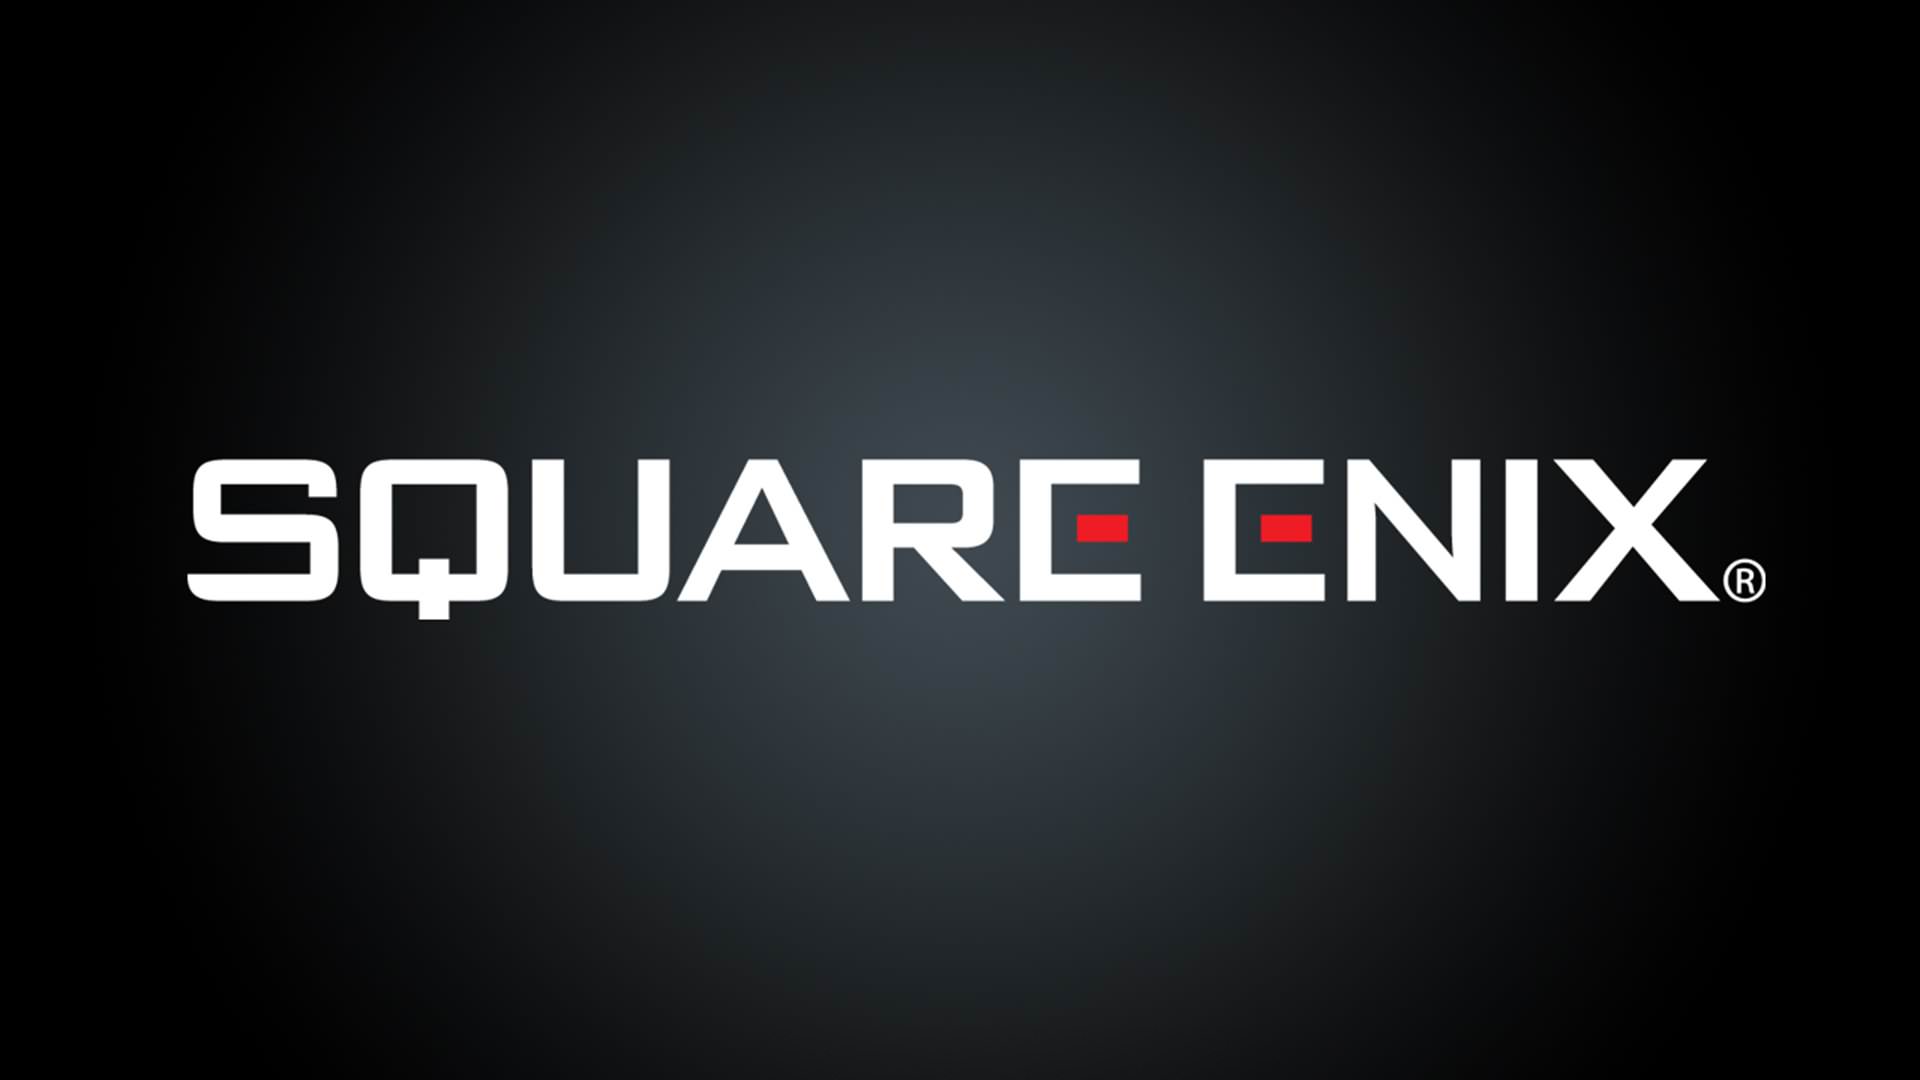 لوگوی شرکت ژاپنی اسکوئر انیکس / Square Enix